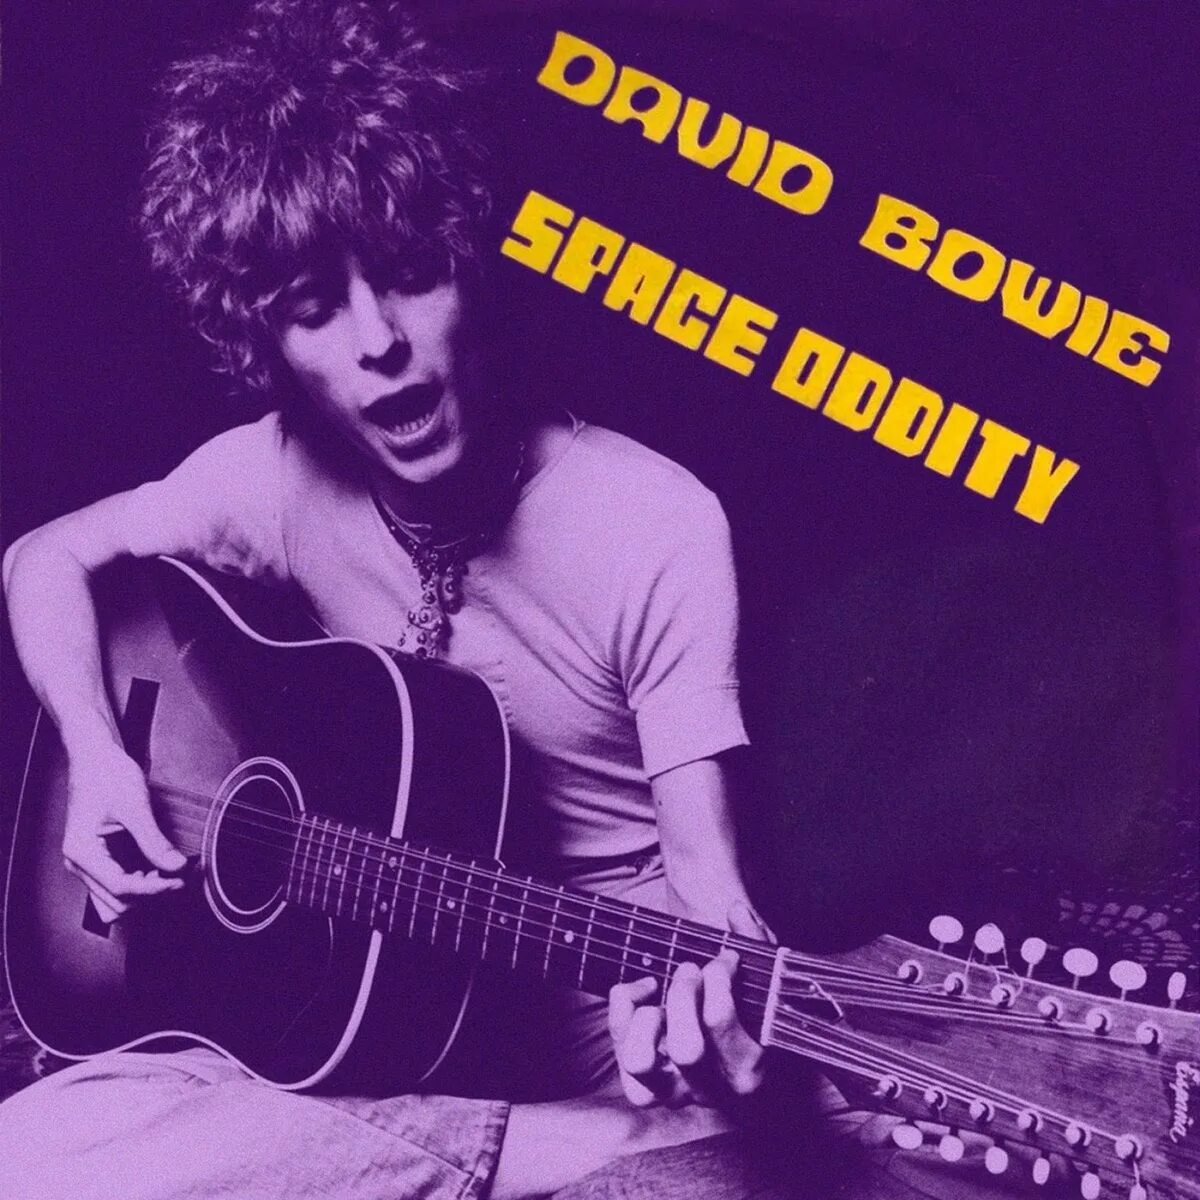 David bowie space. David Bowie Space Oddity 1969. David Bowie 1969 album. Боуи Space Oddity. David Bowie Space Oddity Single 1969.